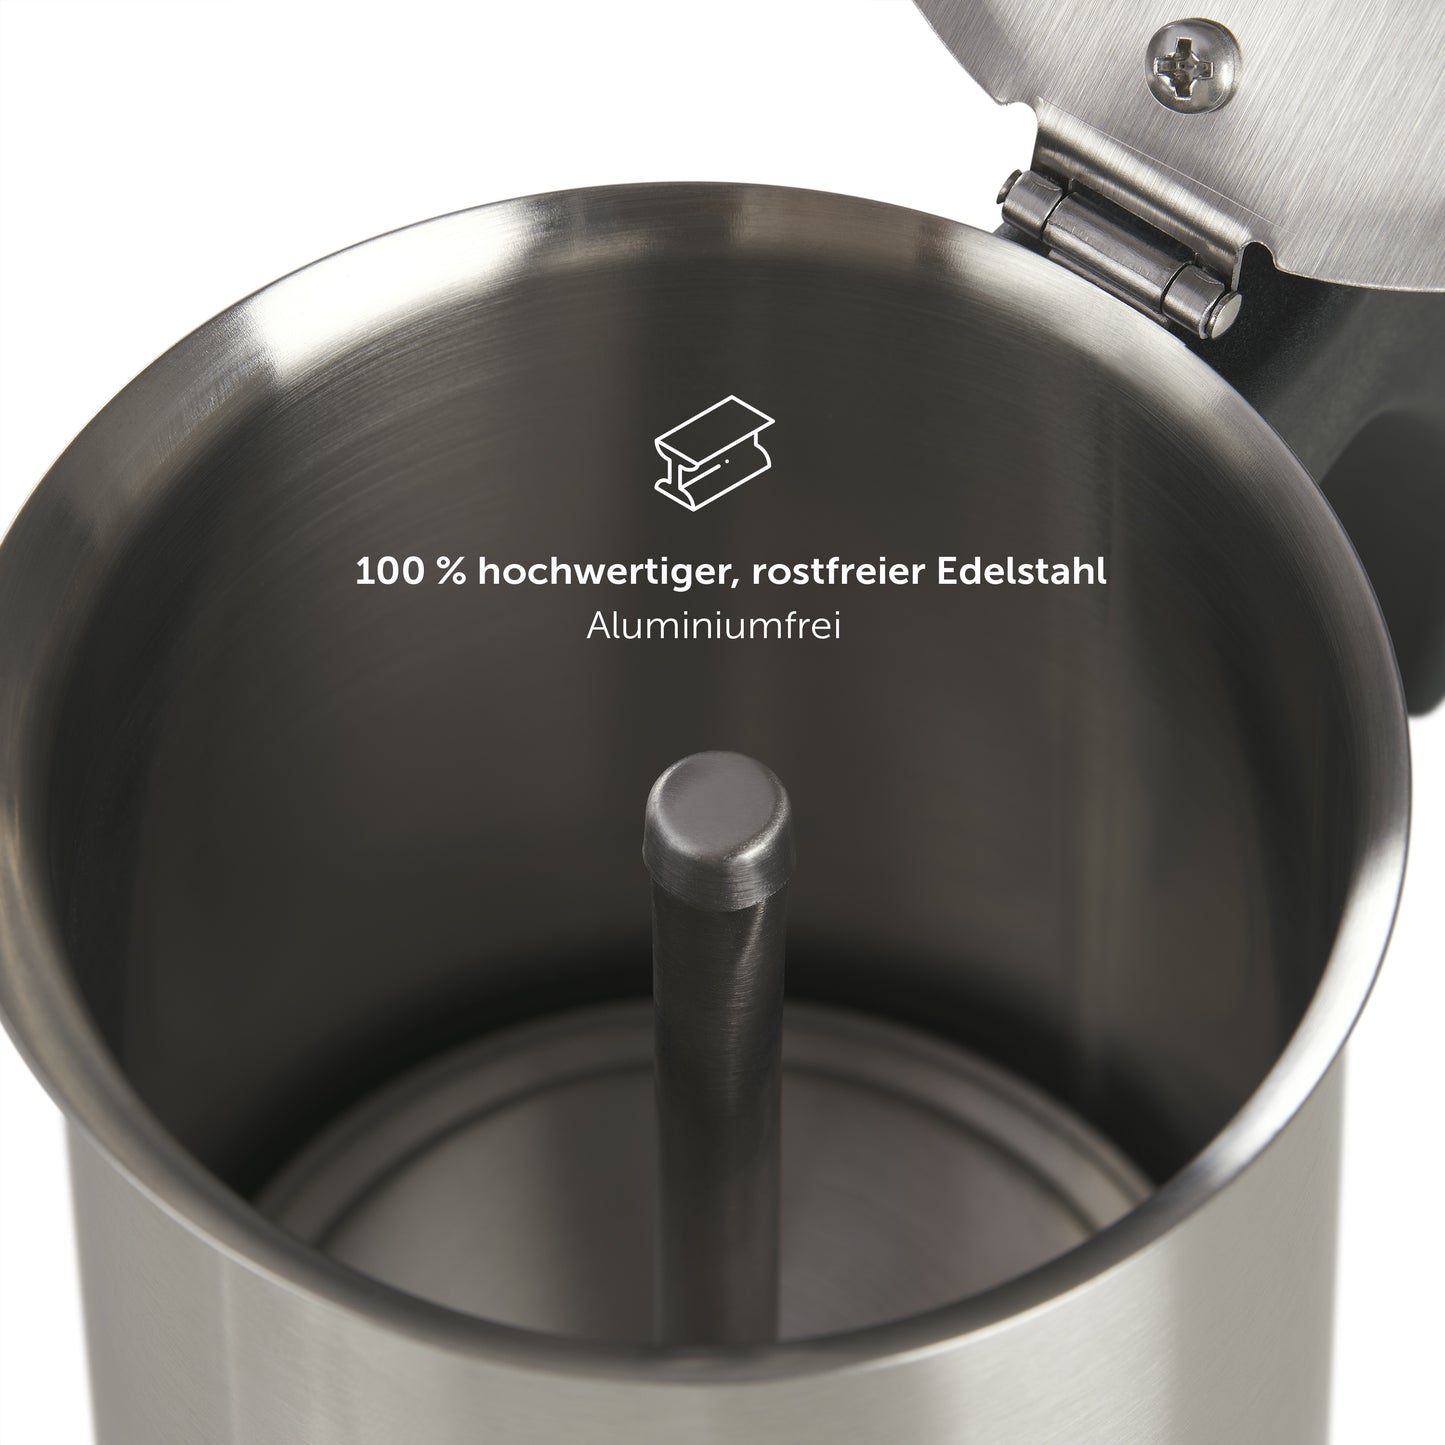 Innenansicht des Espressokochers mit Hinweisen auf 100% hochwertigen, rostfreien Edelstahl und Aluminiumfreiheit.